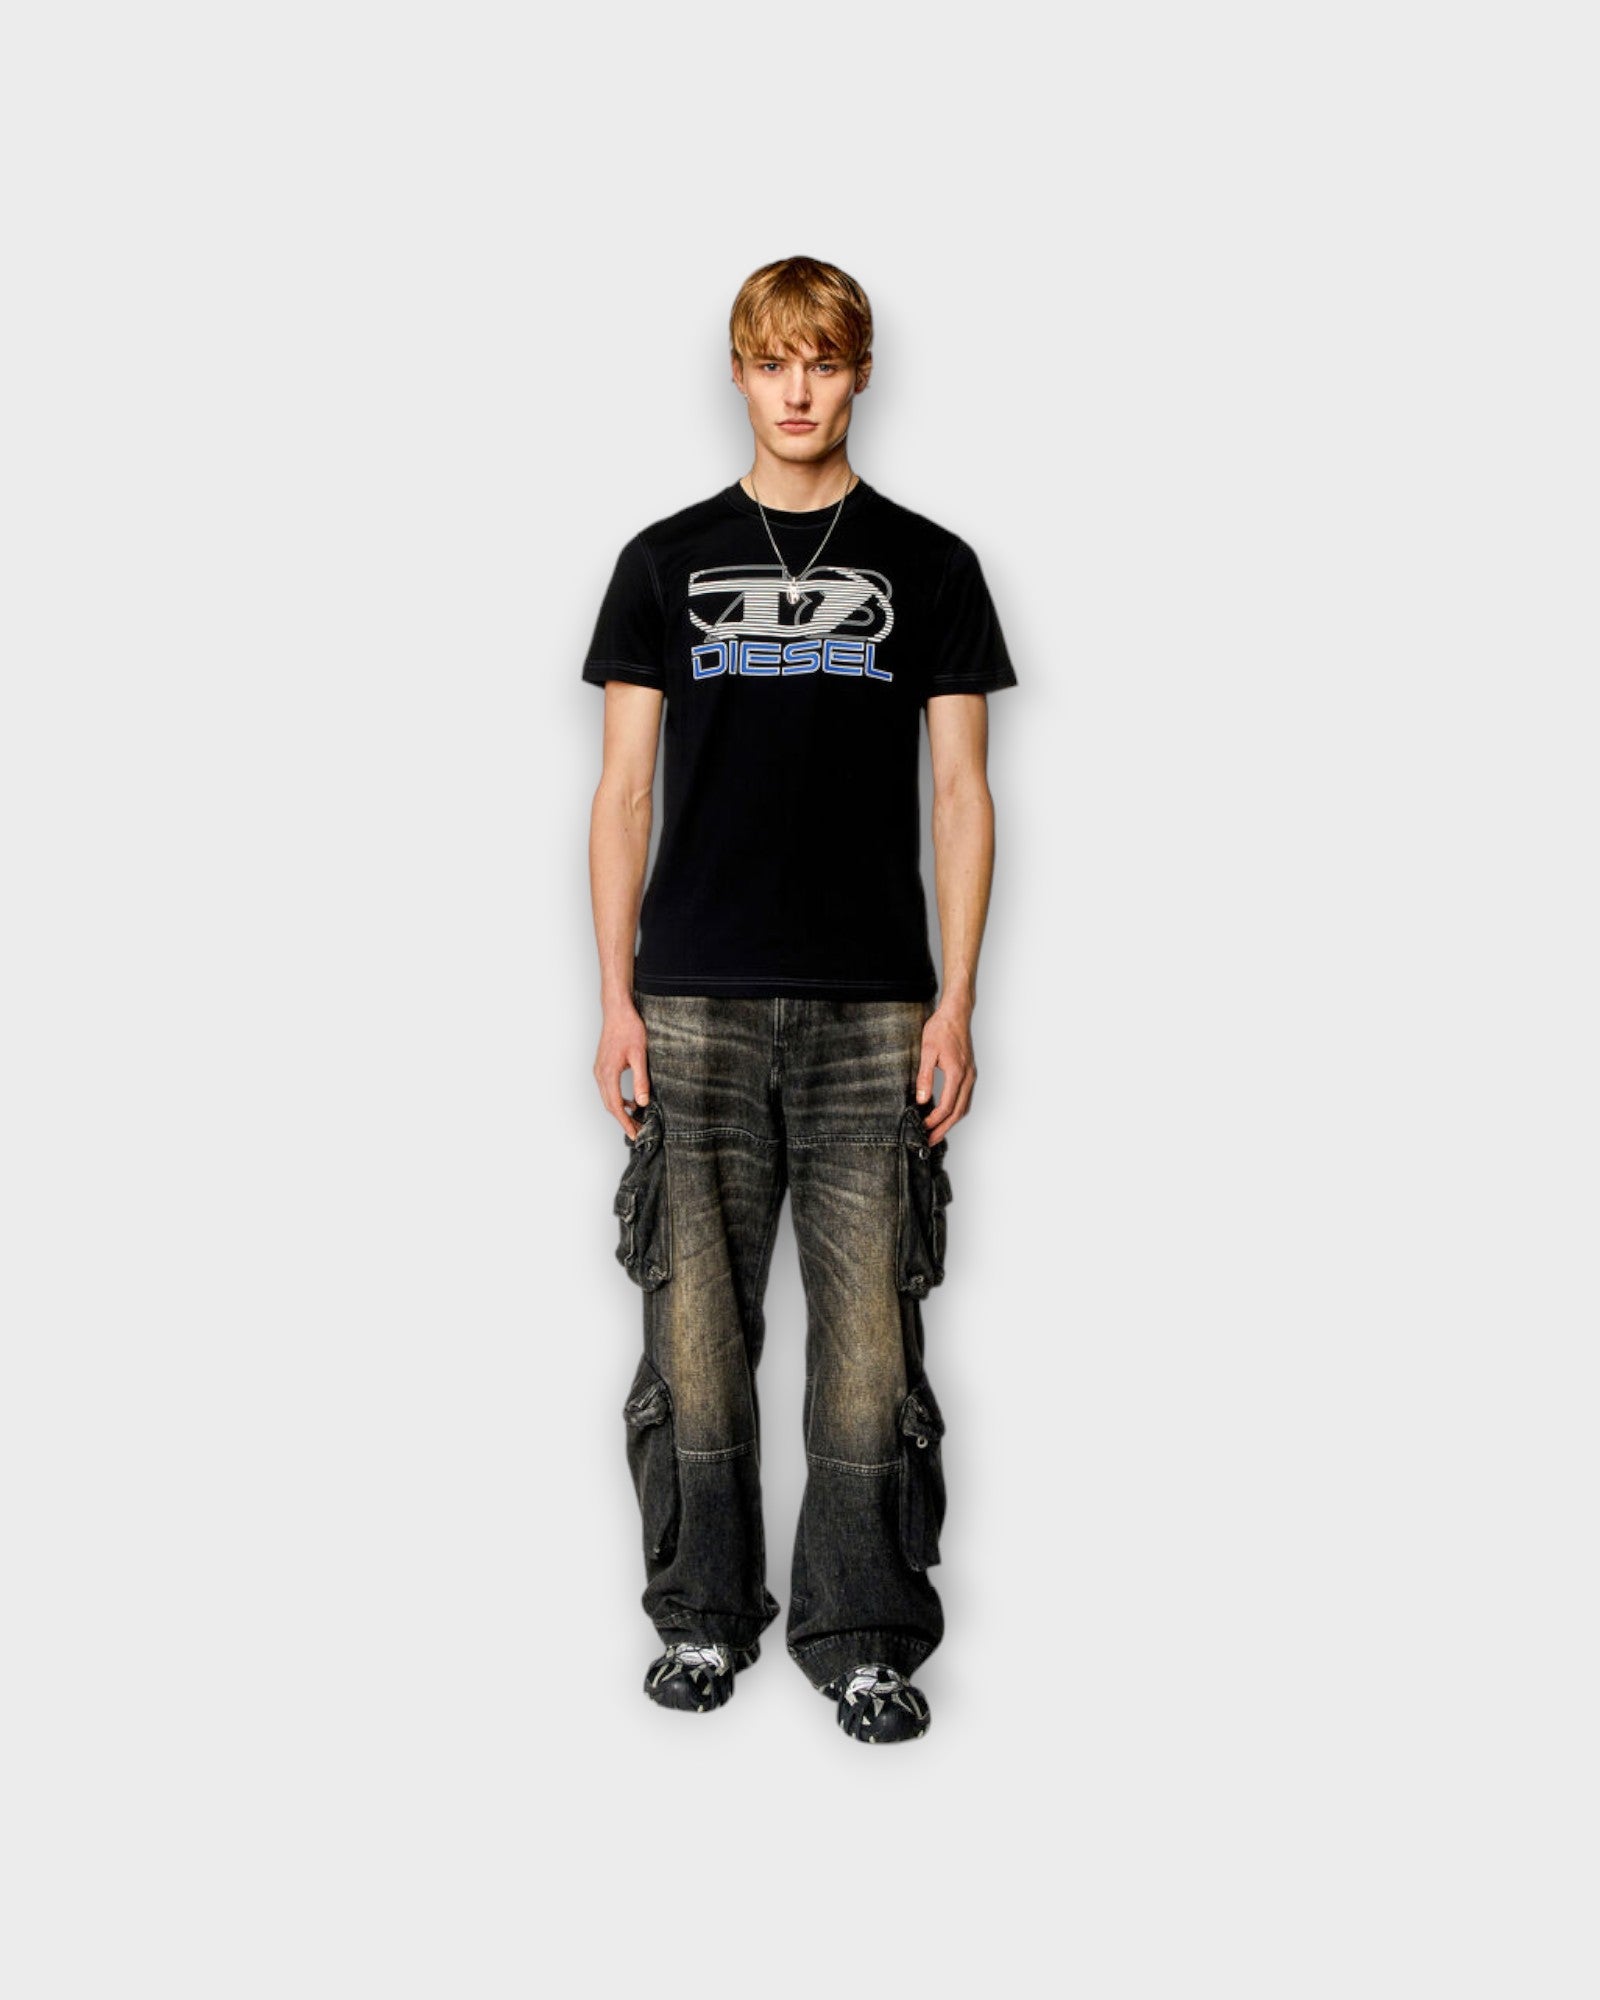 Diegor K Tee Black - Sort Diesel T-shirt til Mænd med print. Her set på model forfra.